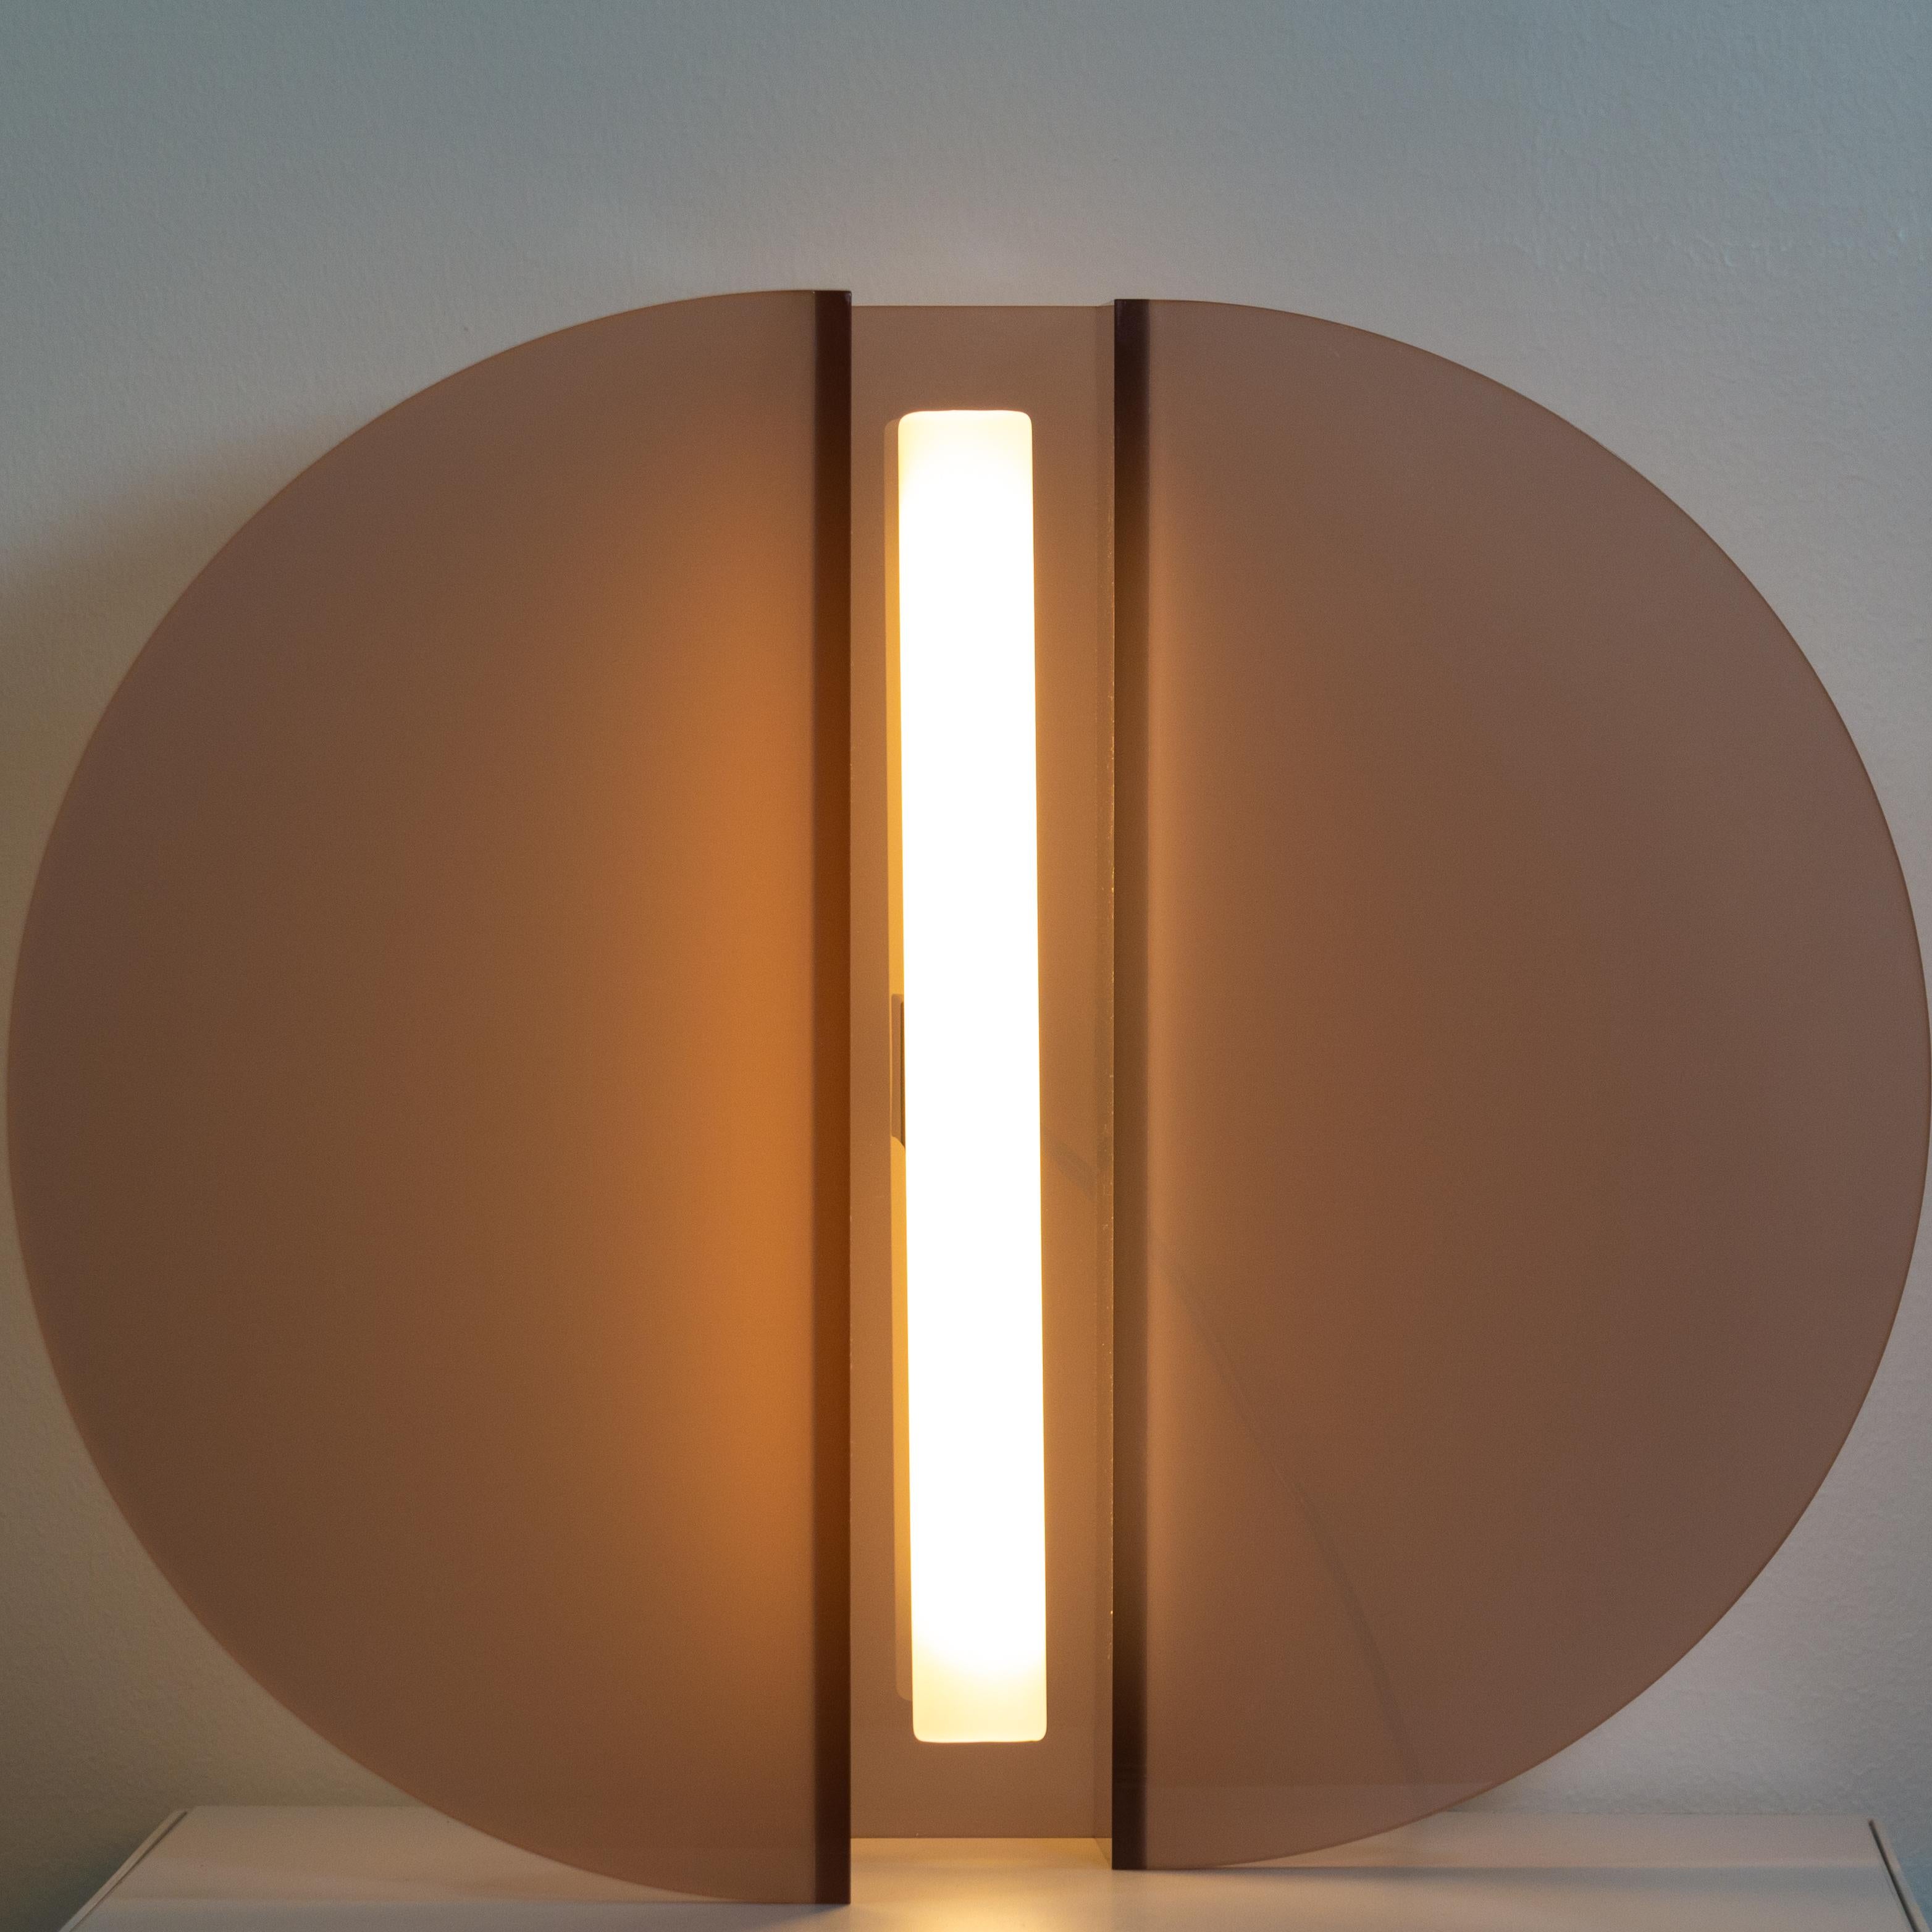 Lampe de table Surge par Studio Lampent
Dimensions : D 35 x L 41 x H 17,5 cm
Matériaux : Acrylique moulé
Poids : 2,5 kg.

Toutes nos lampes peuvent être câblées en fonction de chaque pays. Si elle est vendue aux États-Unis, elle sera câblée pour les